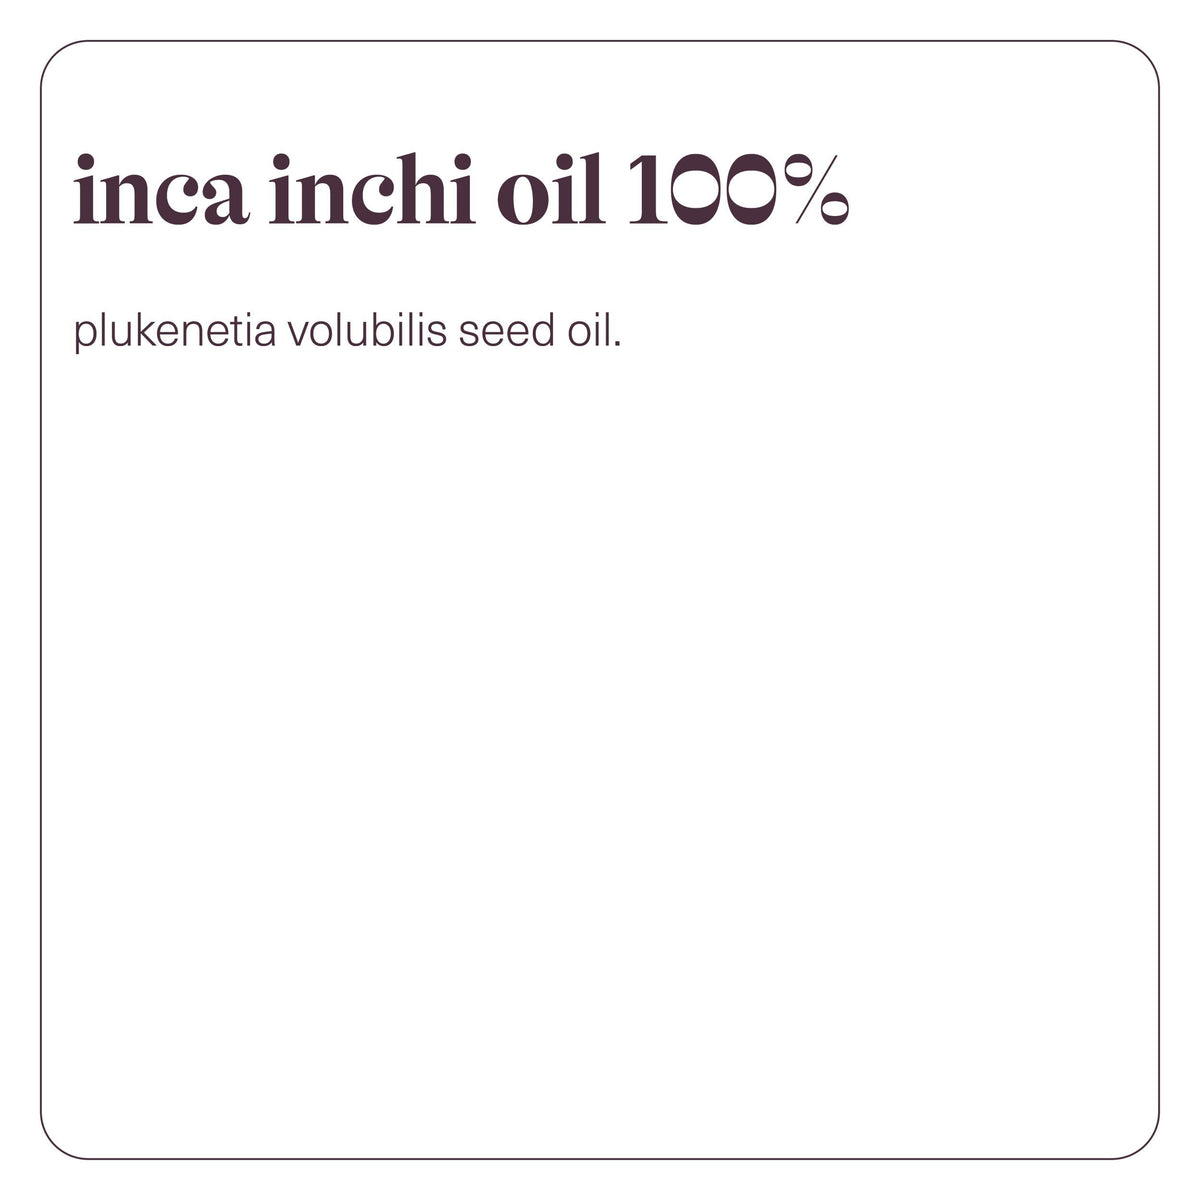 Inca Inchi Oil 100%